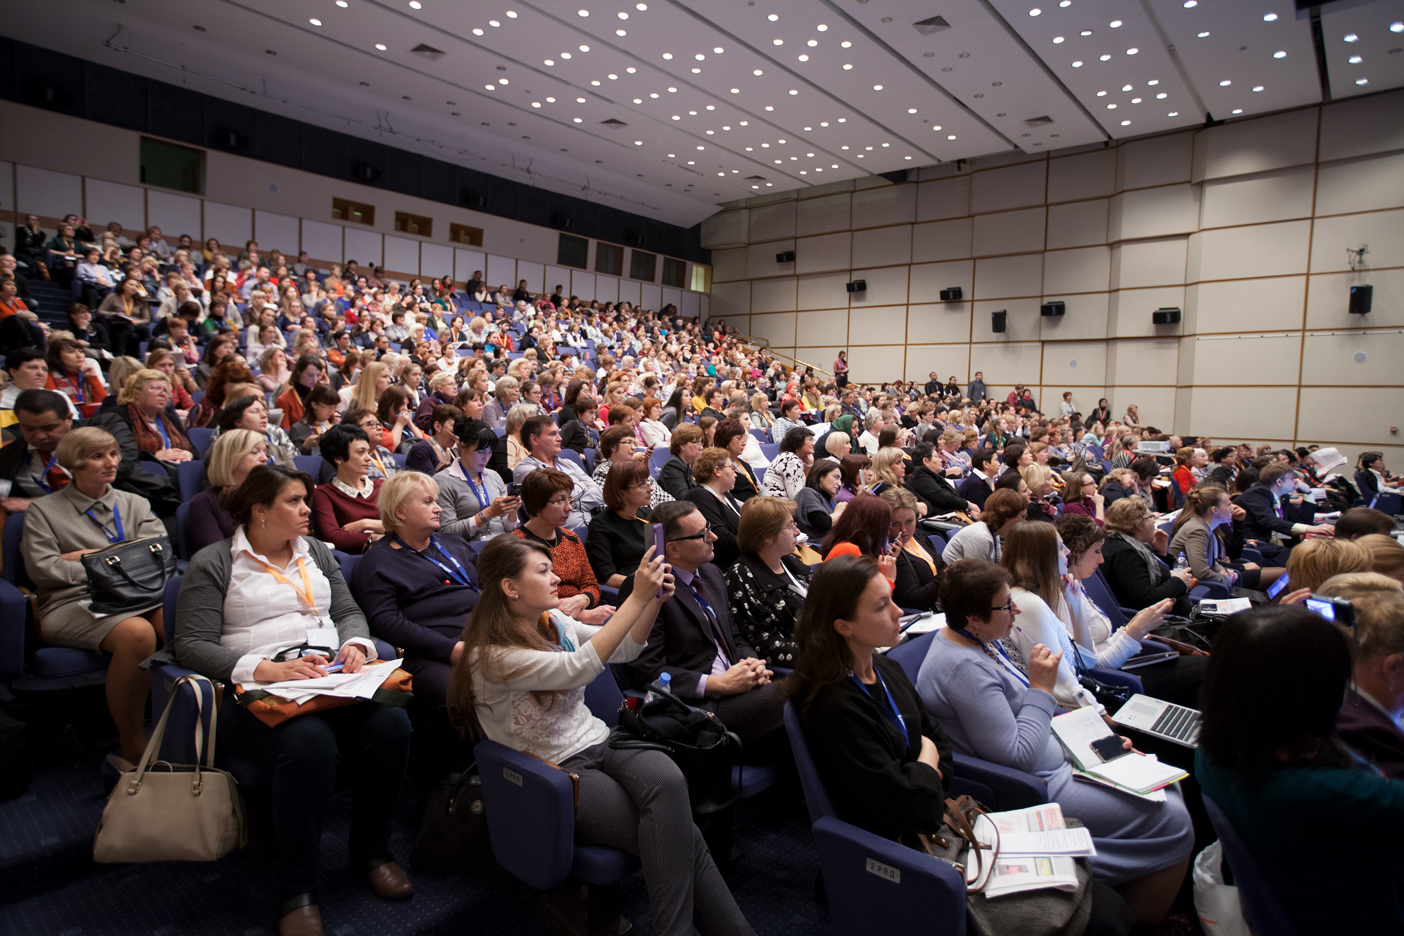 Семинар конференция научная. Люди в зале на конференции. Полный зал зрителей. Конференция зал с людьми. Аудитория для тренинга.